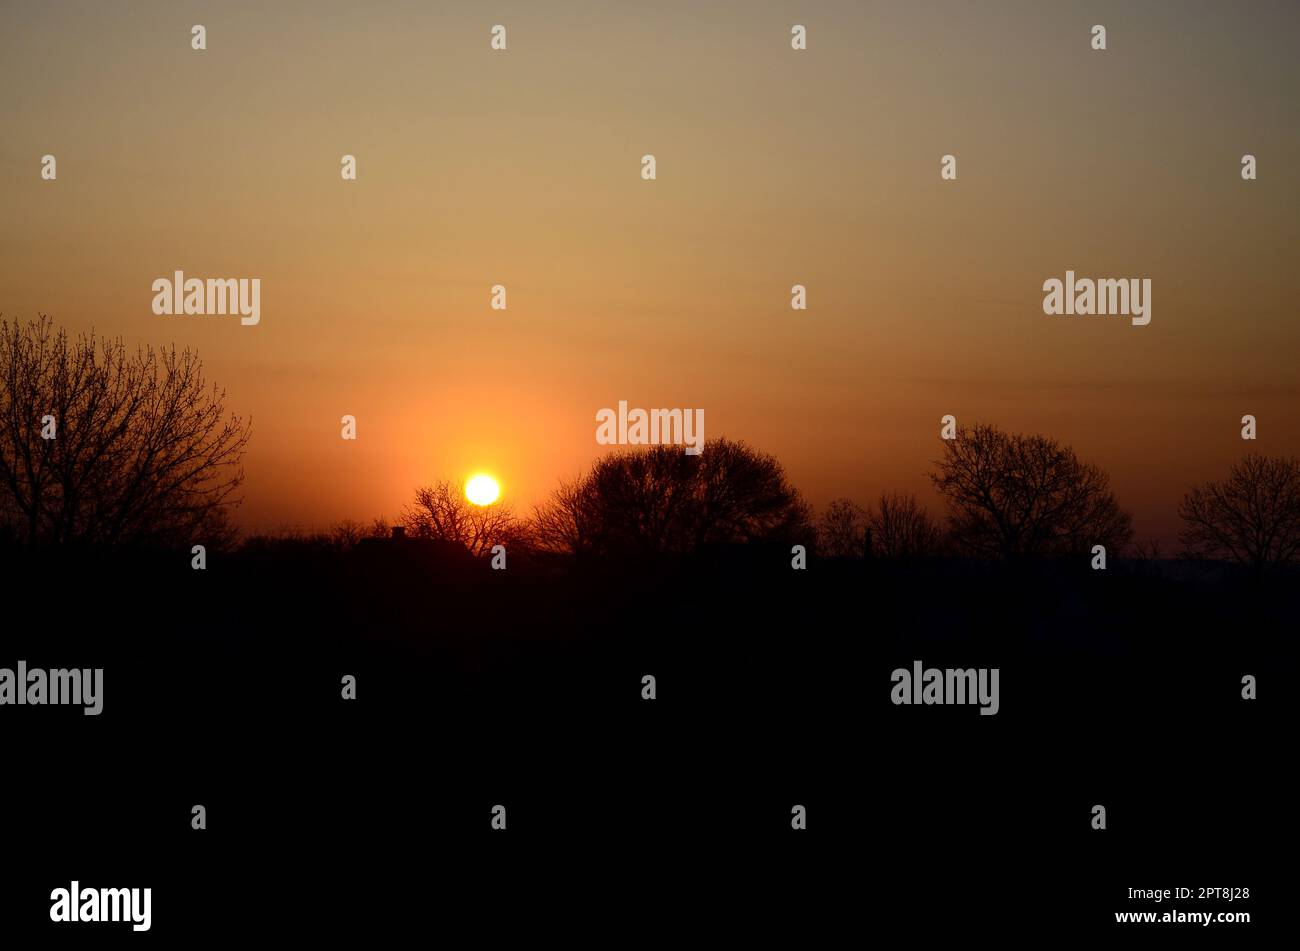 Dawn in the village. Sunrise in the suburban landscape Stock Photo